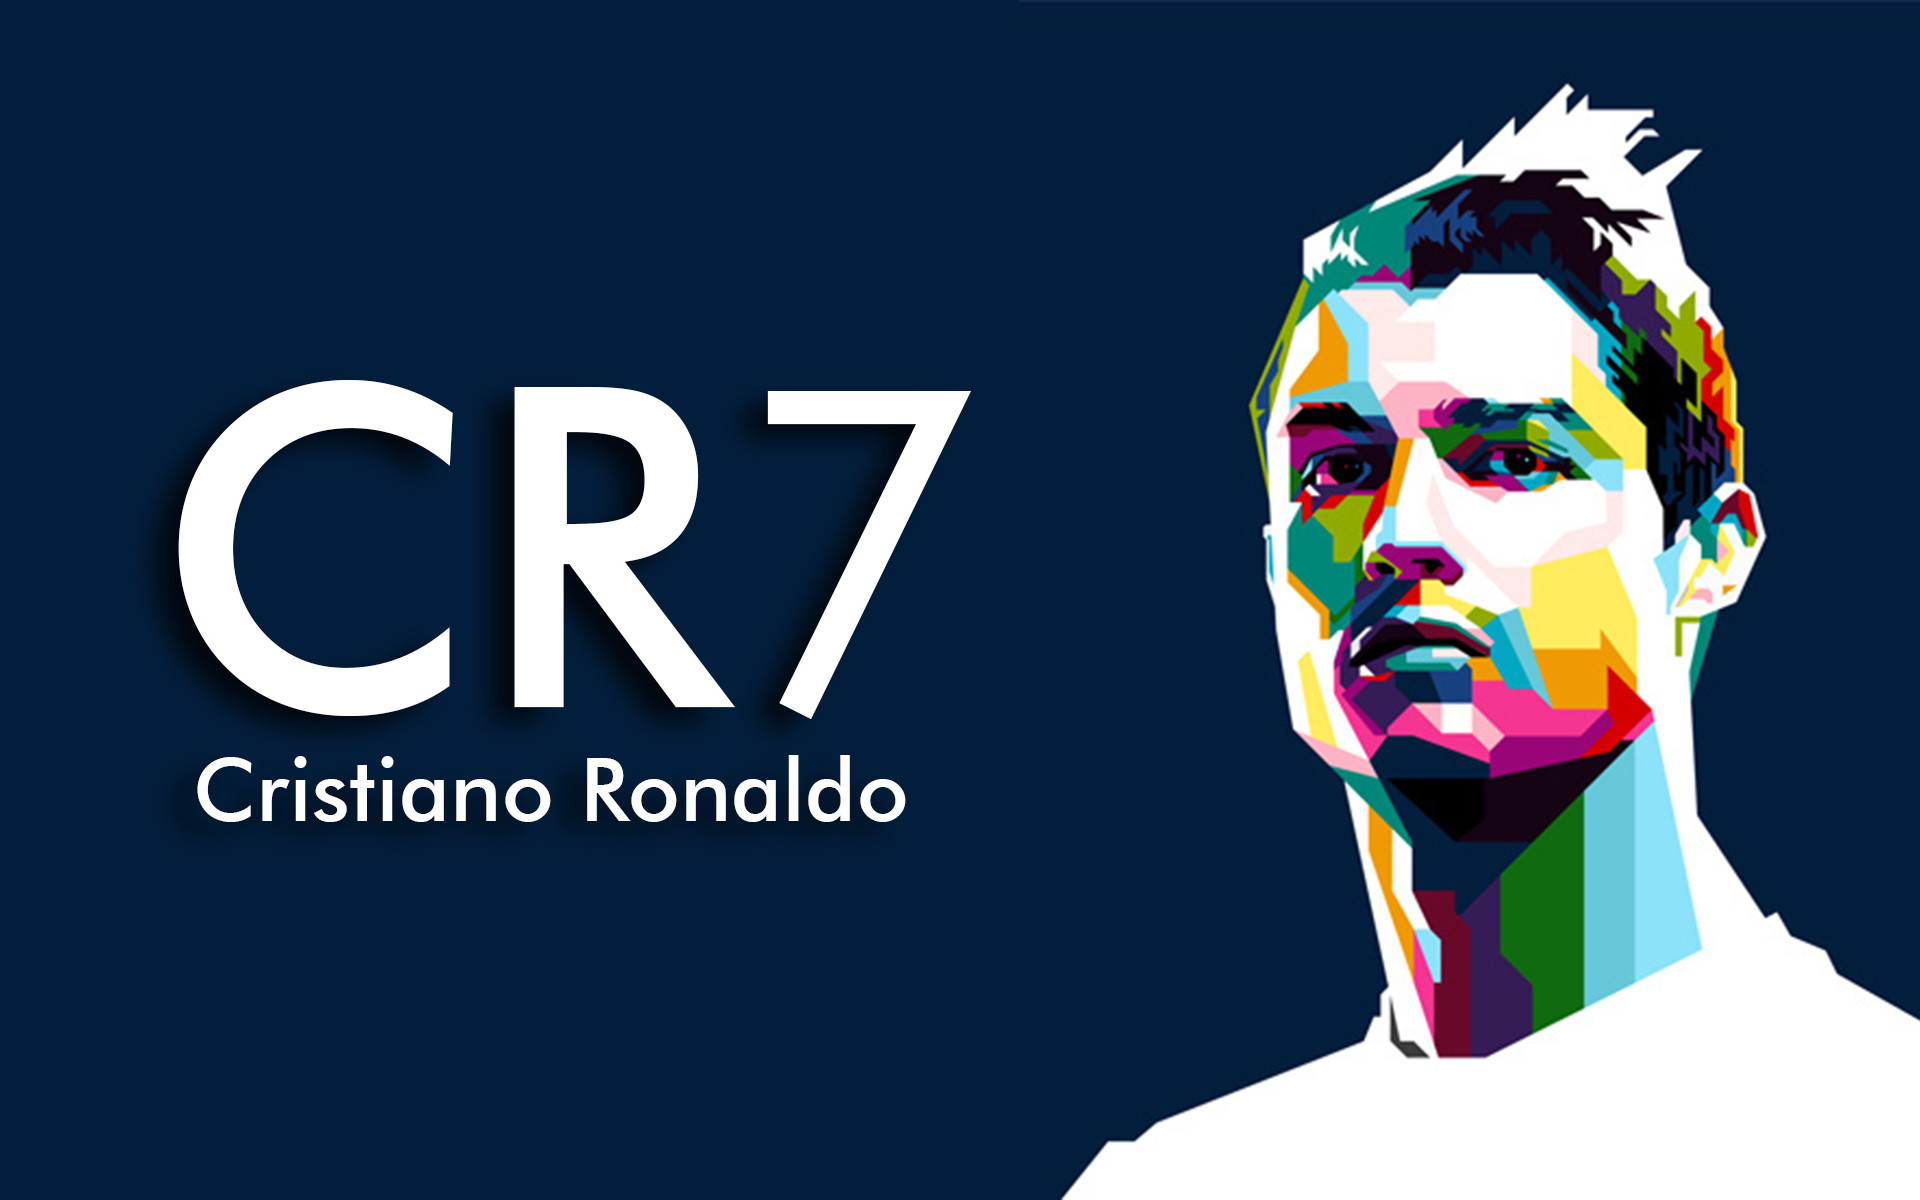 Cristiano Ronaldo - Cr7 Wallpaper for iPhone 6 Plus